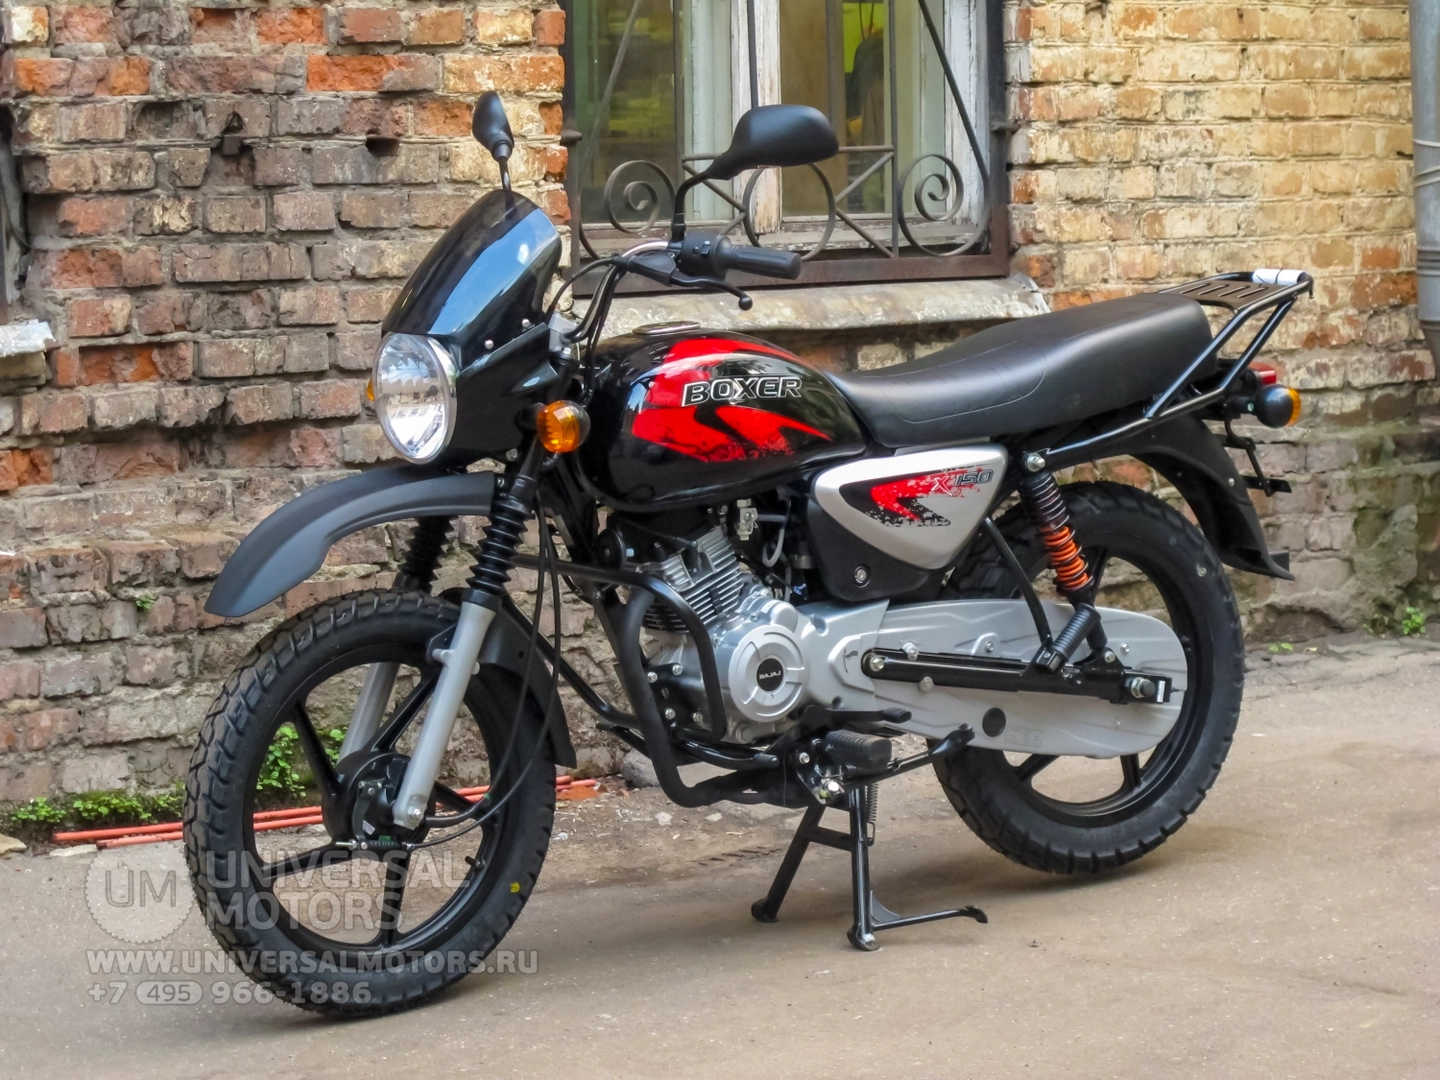 Мотоцикл Bajaj Boxer BM 150 X, 38249949321258796302